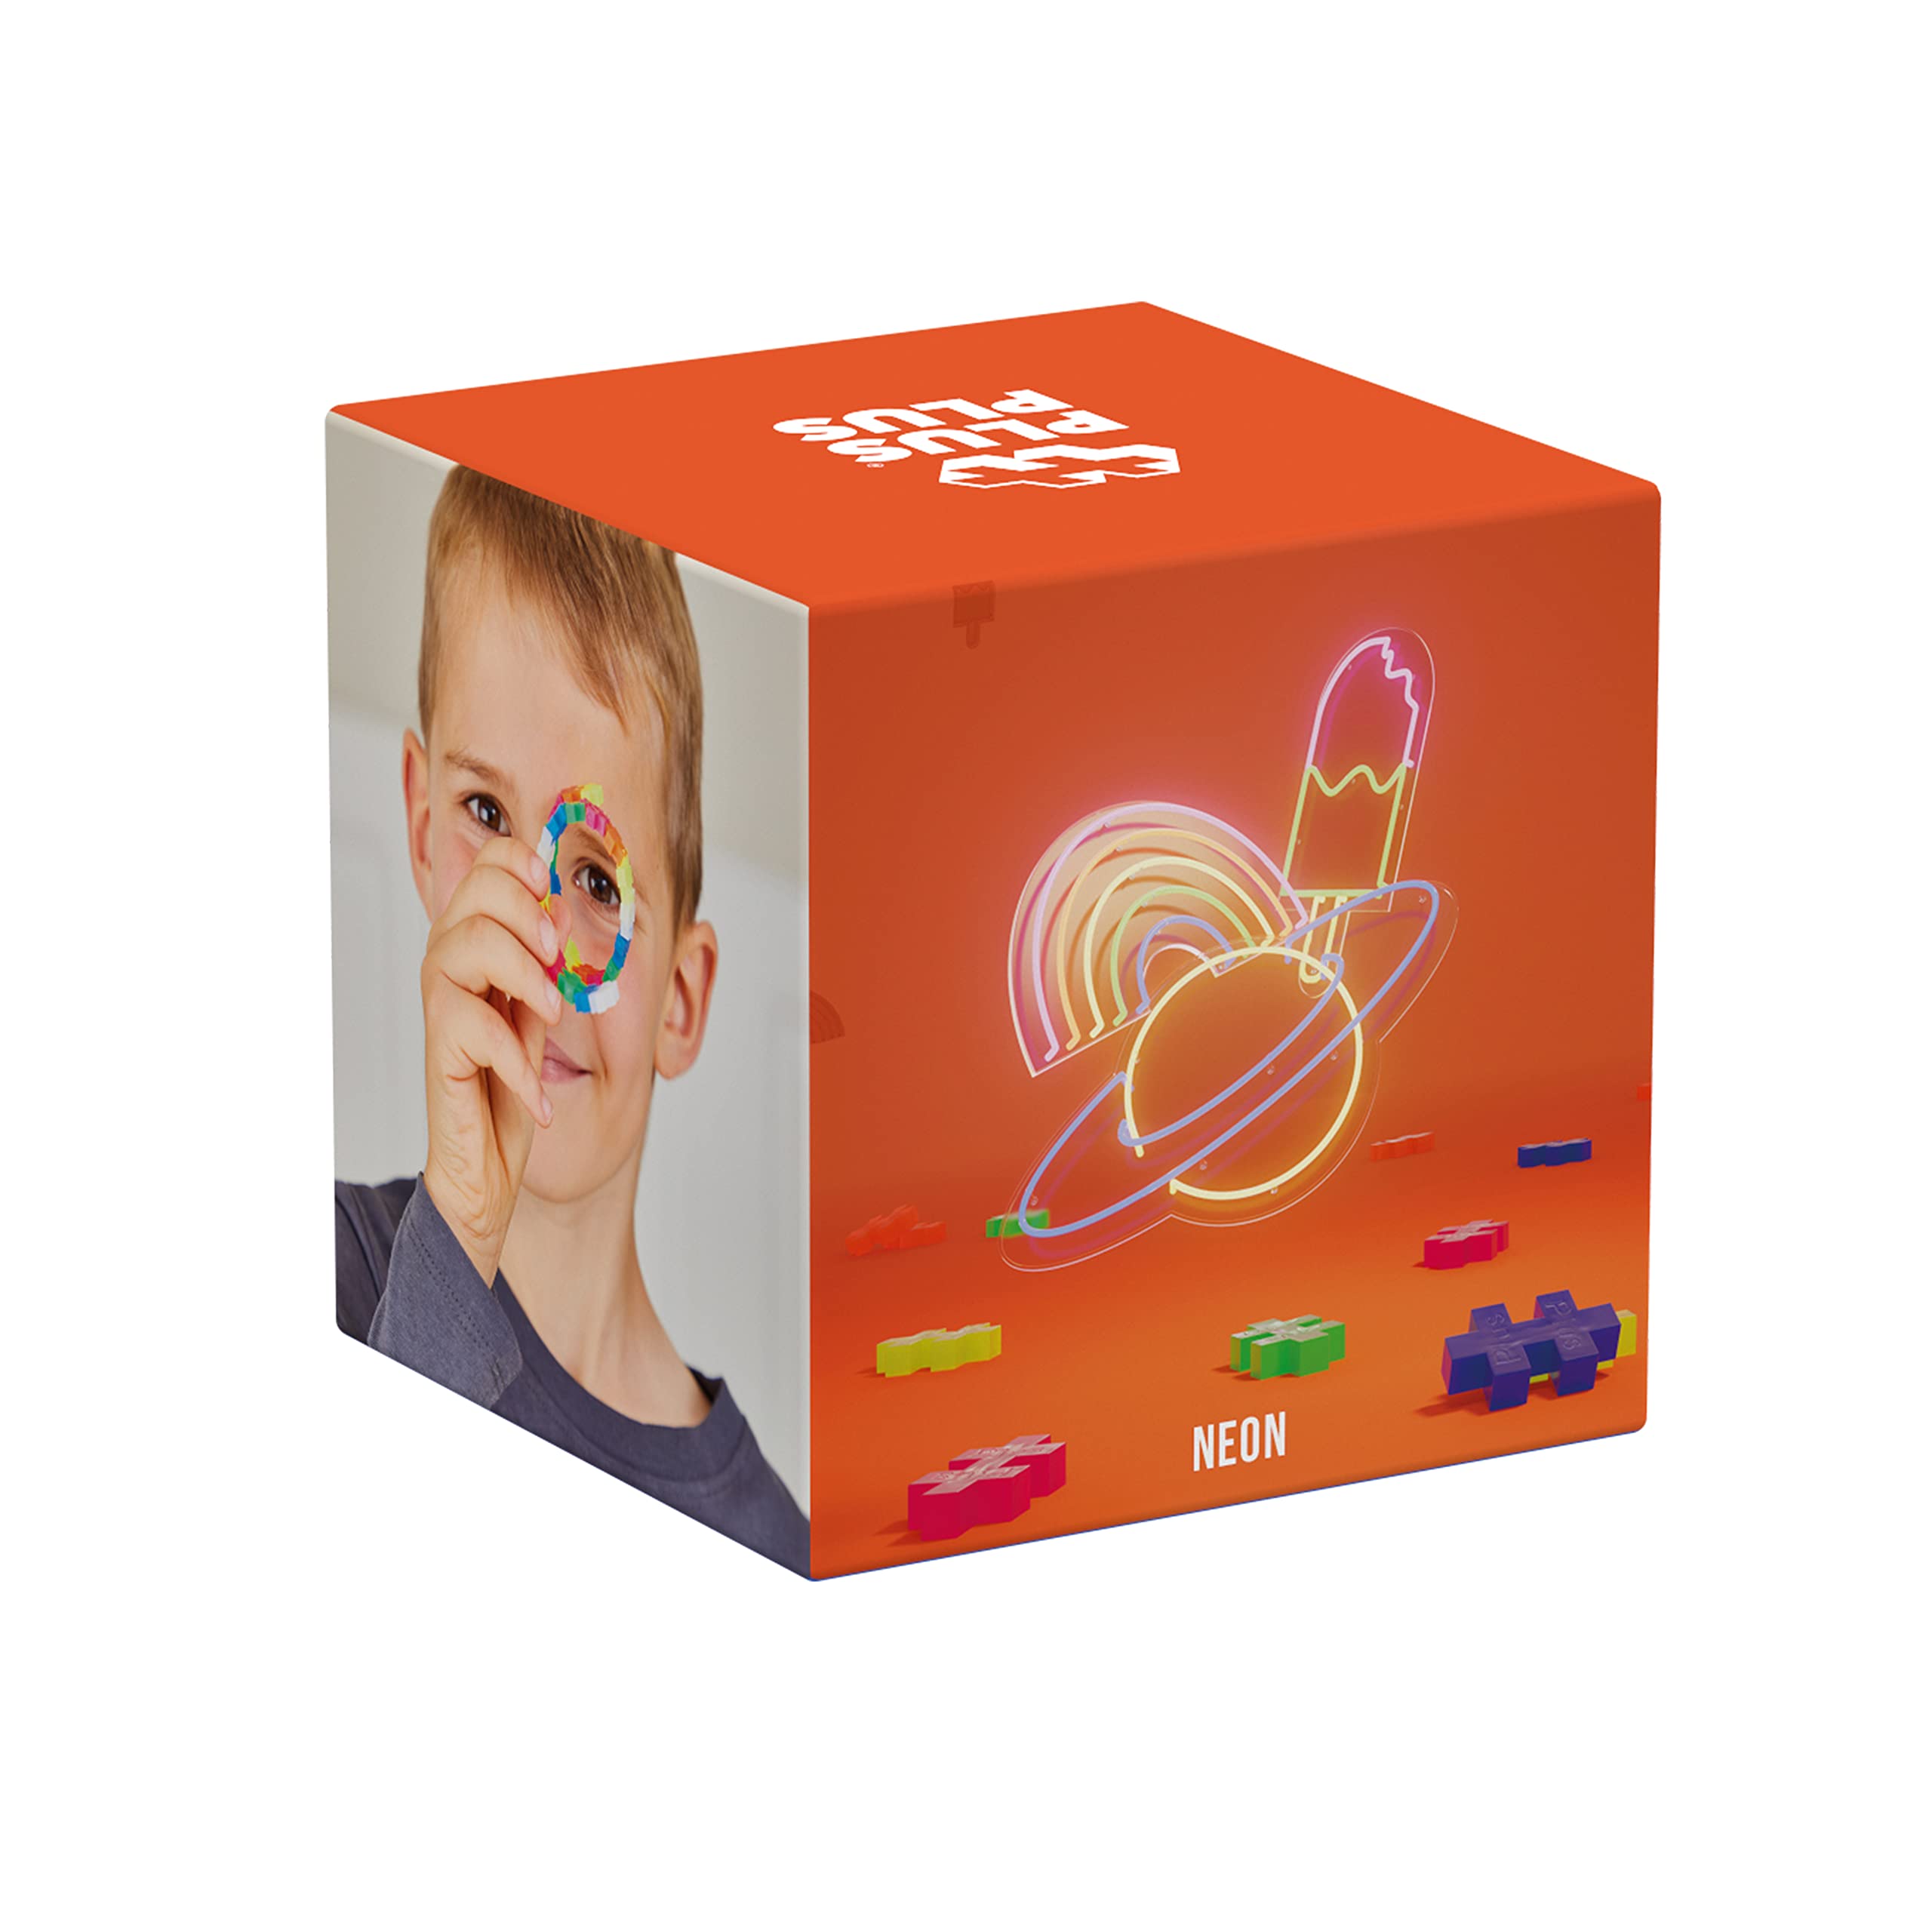 PLUS PLUS - Open Play Set - 600 Piece - Neon Color Mix, Construction Building Stem Toy, Interlocking Mini Puzzle Blocks for Kids